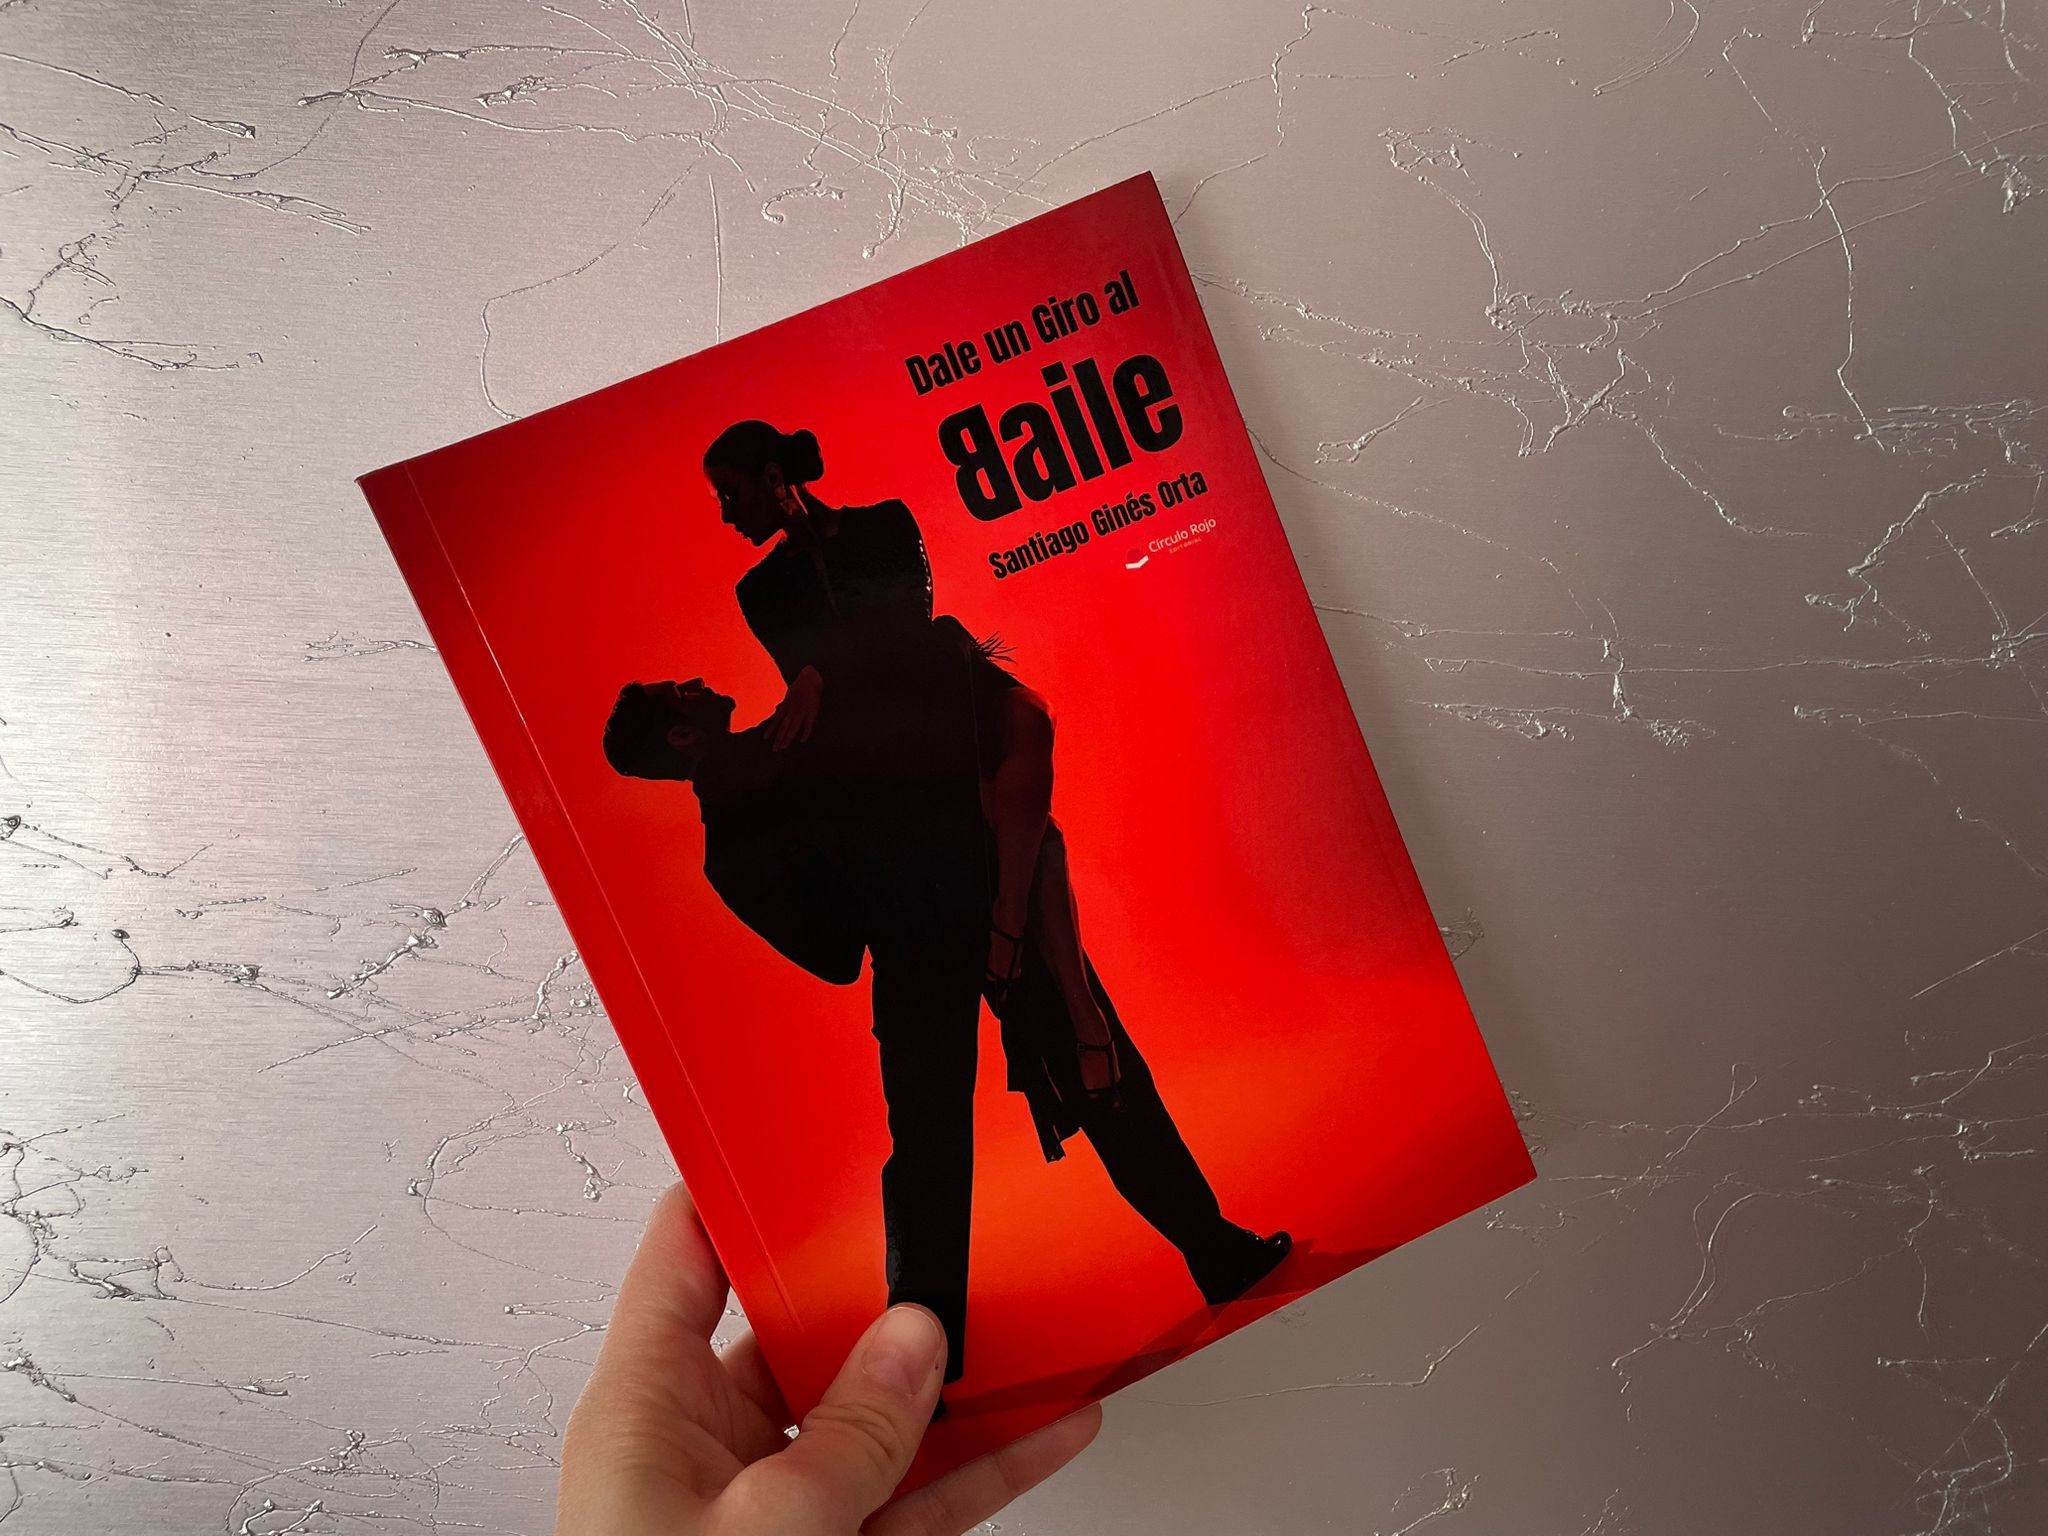 Reseña de “Dale un giro al Baile", de Santiago Ginés Orta | Por Daniela González